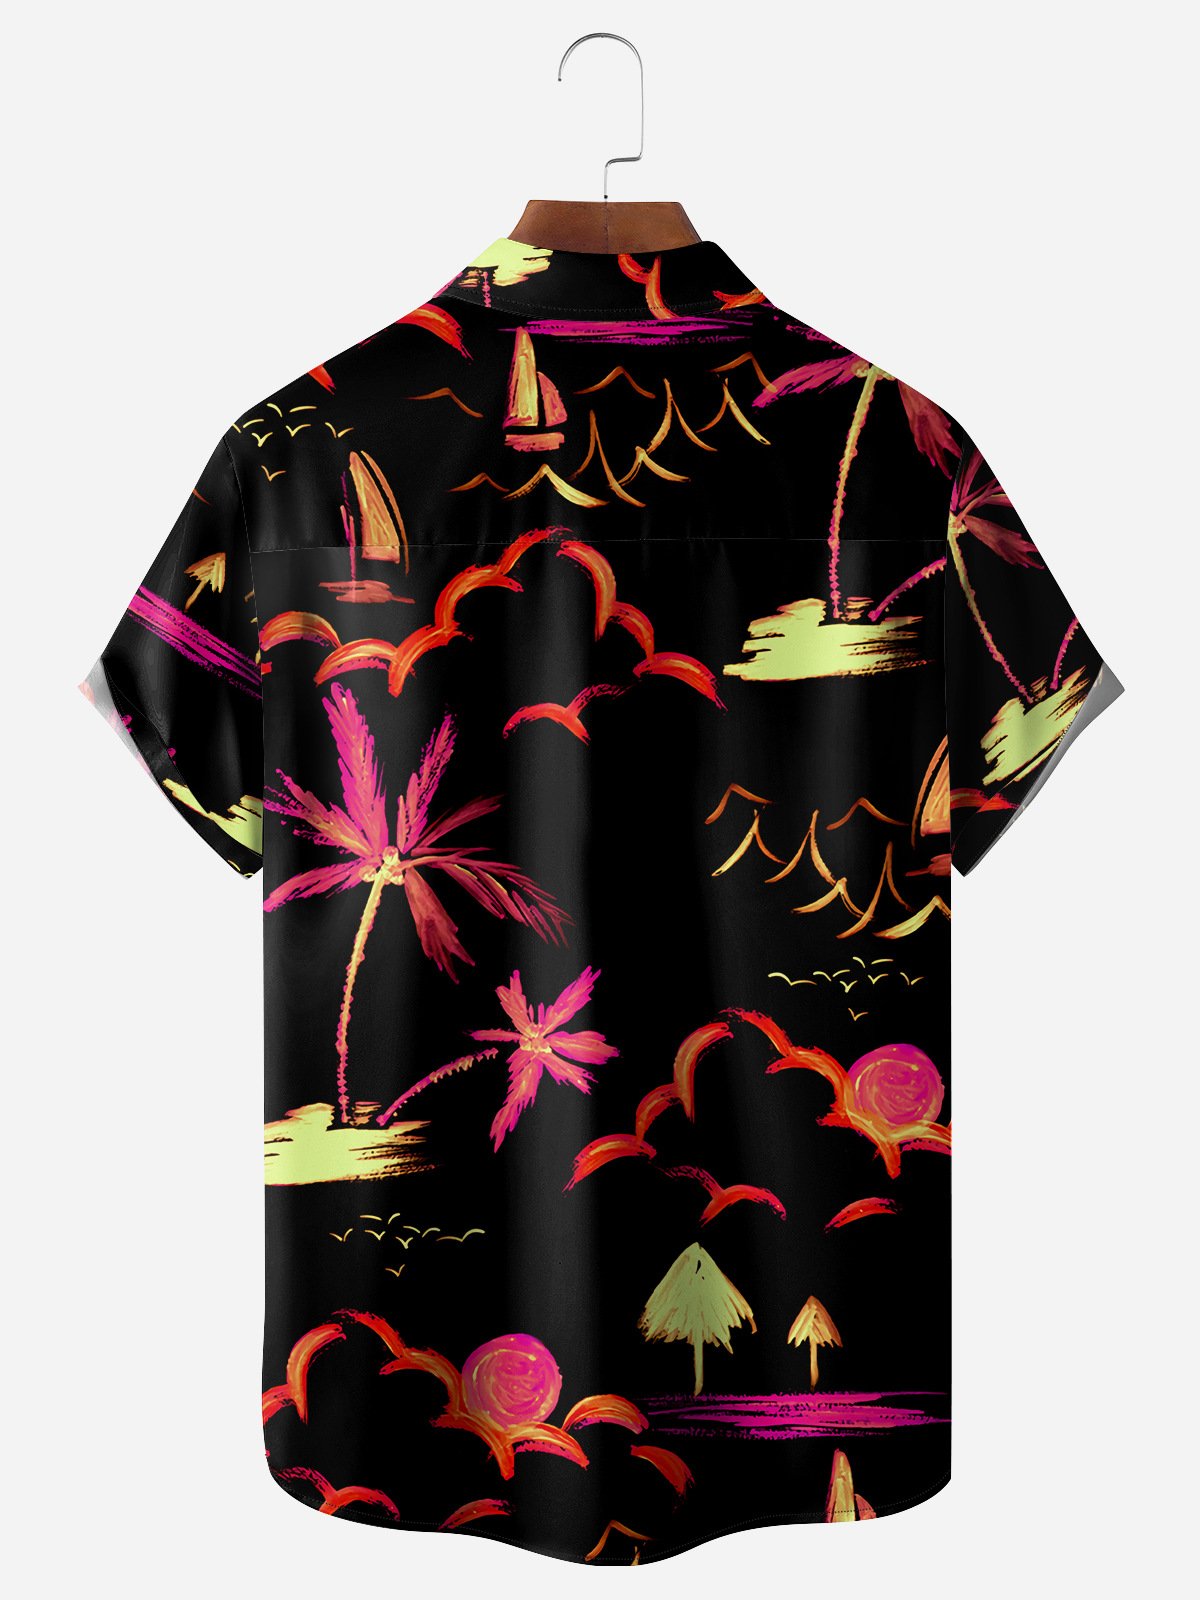 Coconut Tree Painting Chest Pocket Short Sleeve Hawaiian Shirt